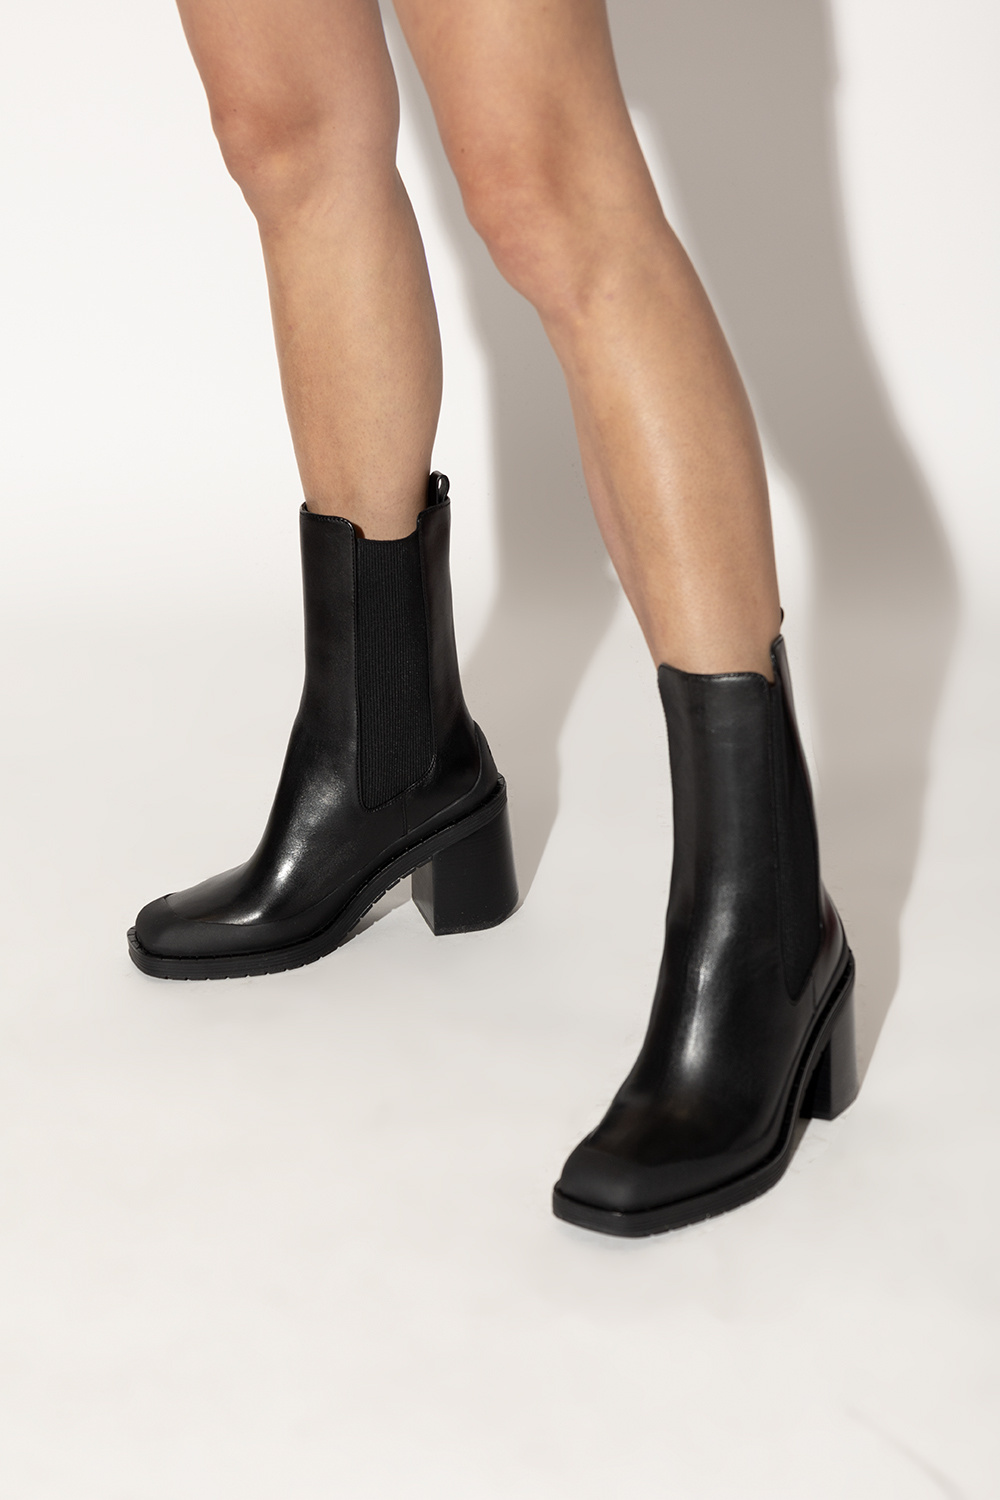 Louis Vuitton Silhouette Ankle Boot - Vitkac shop online